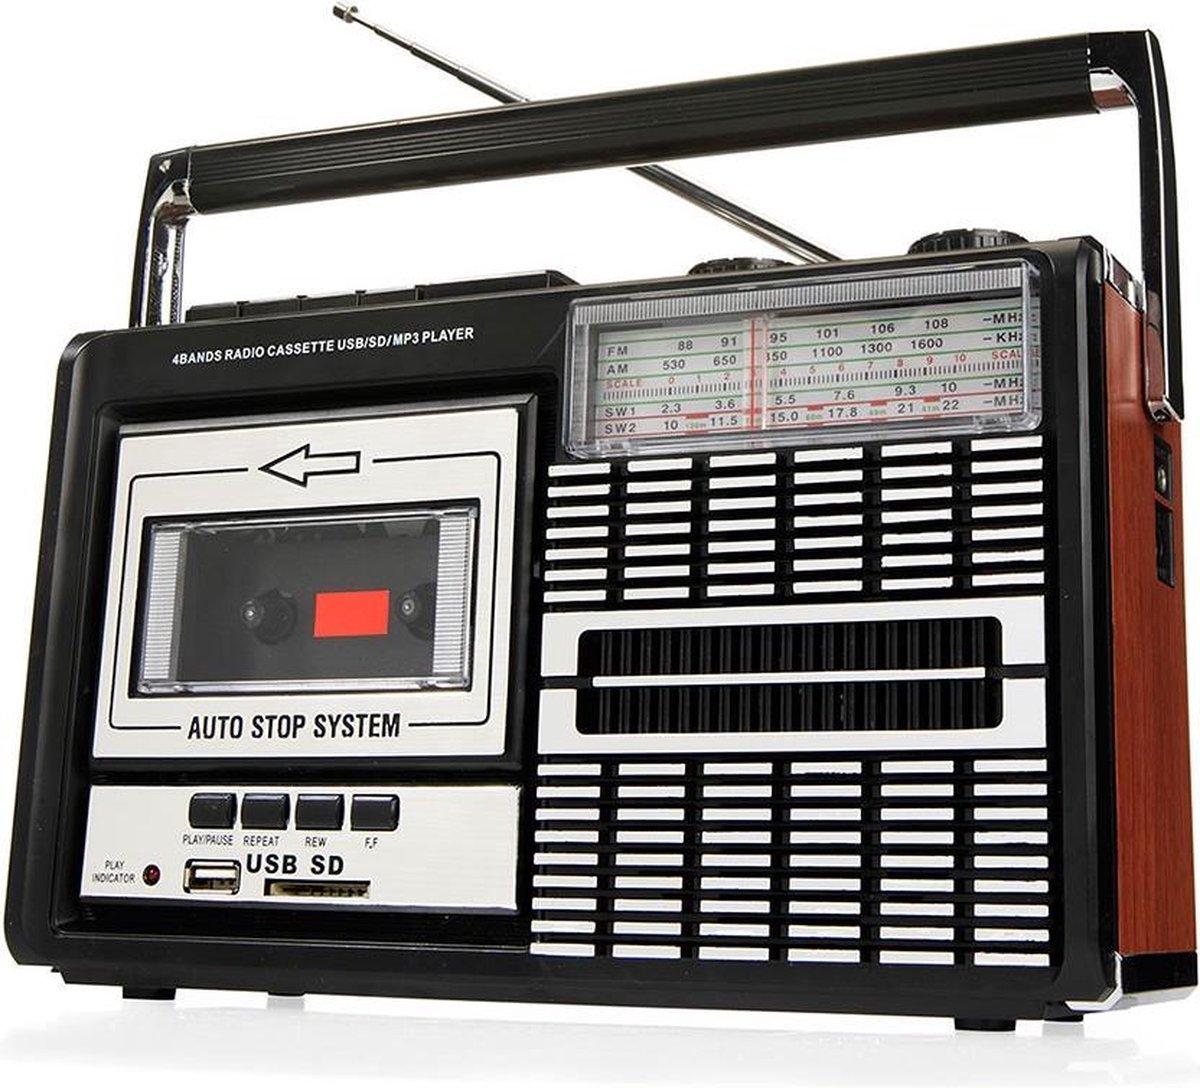 ricatech draagbare retro radio cassette speler pr85 uitzoeken en kopen met  korting